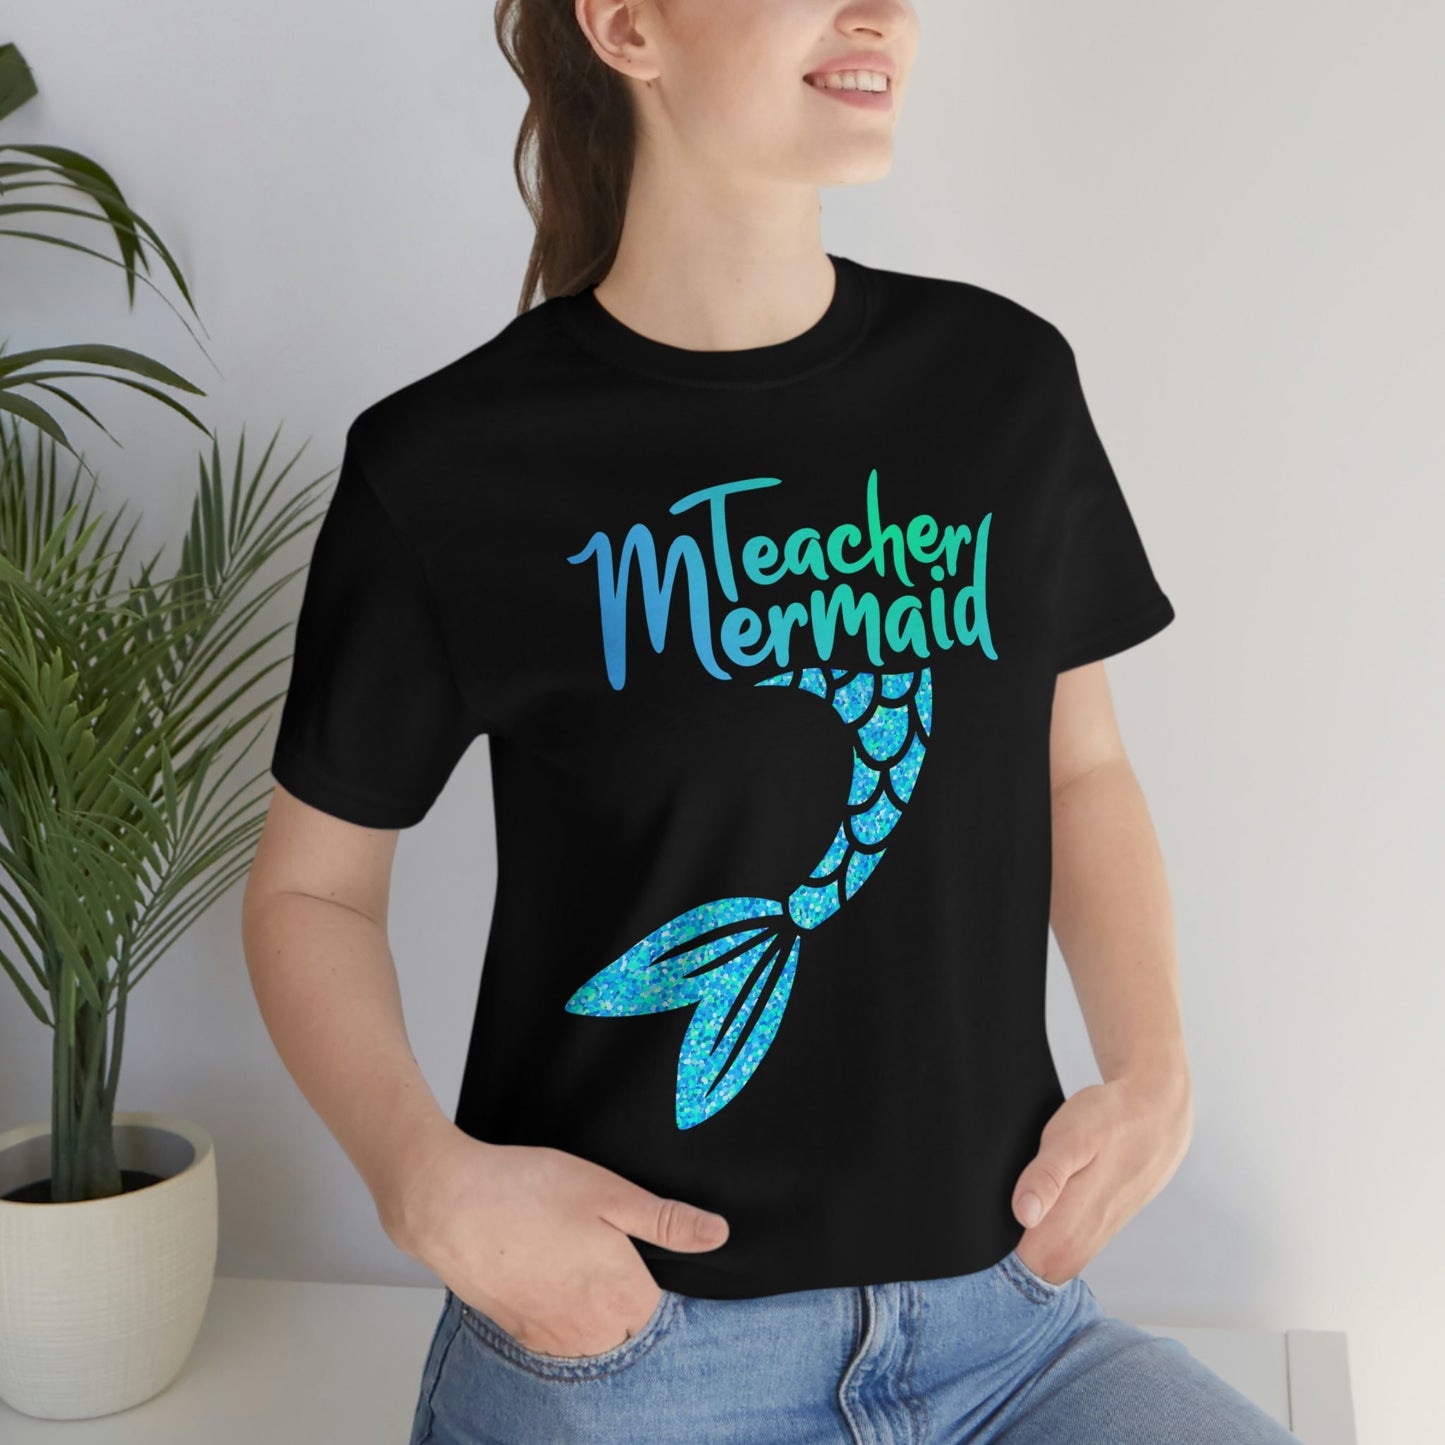 Mermaid teacher in the ocean of knowledge shirt